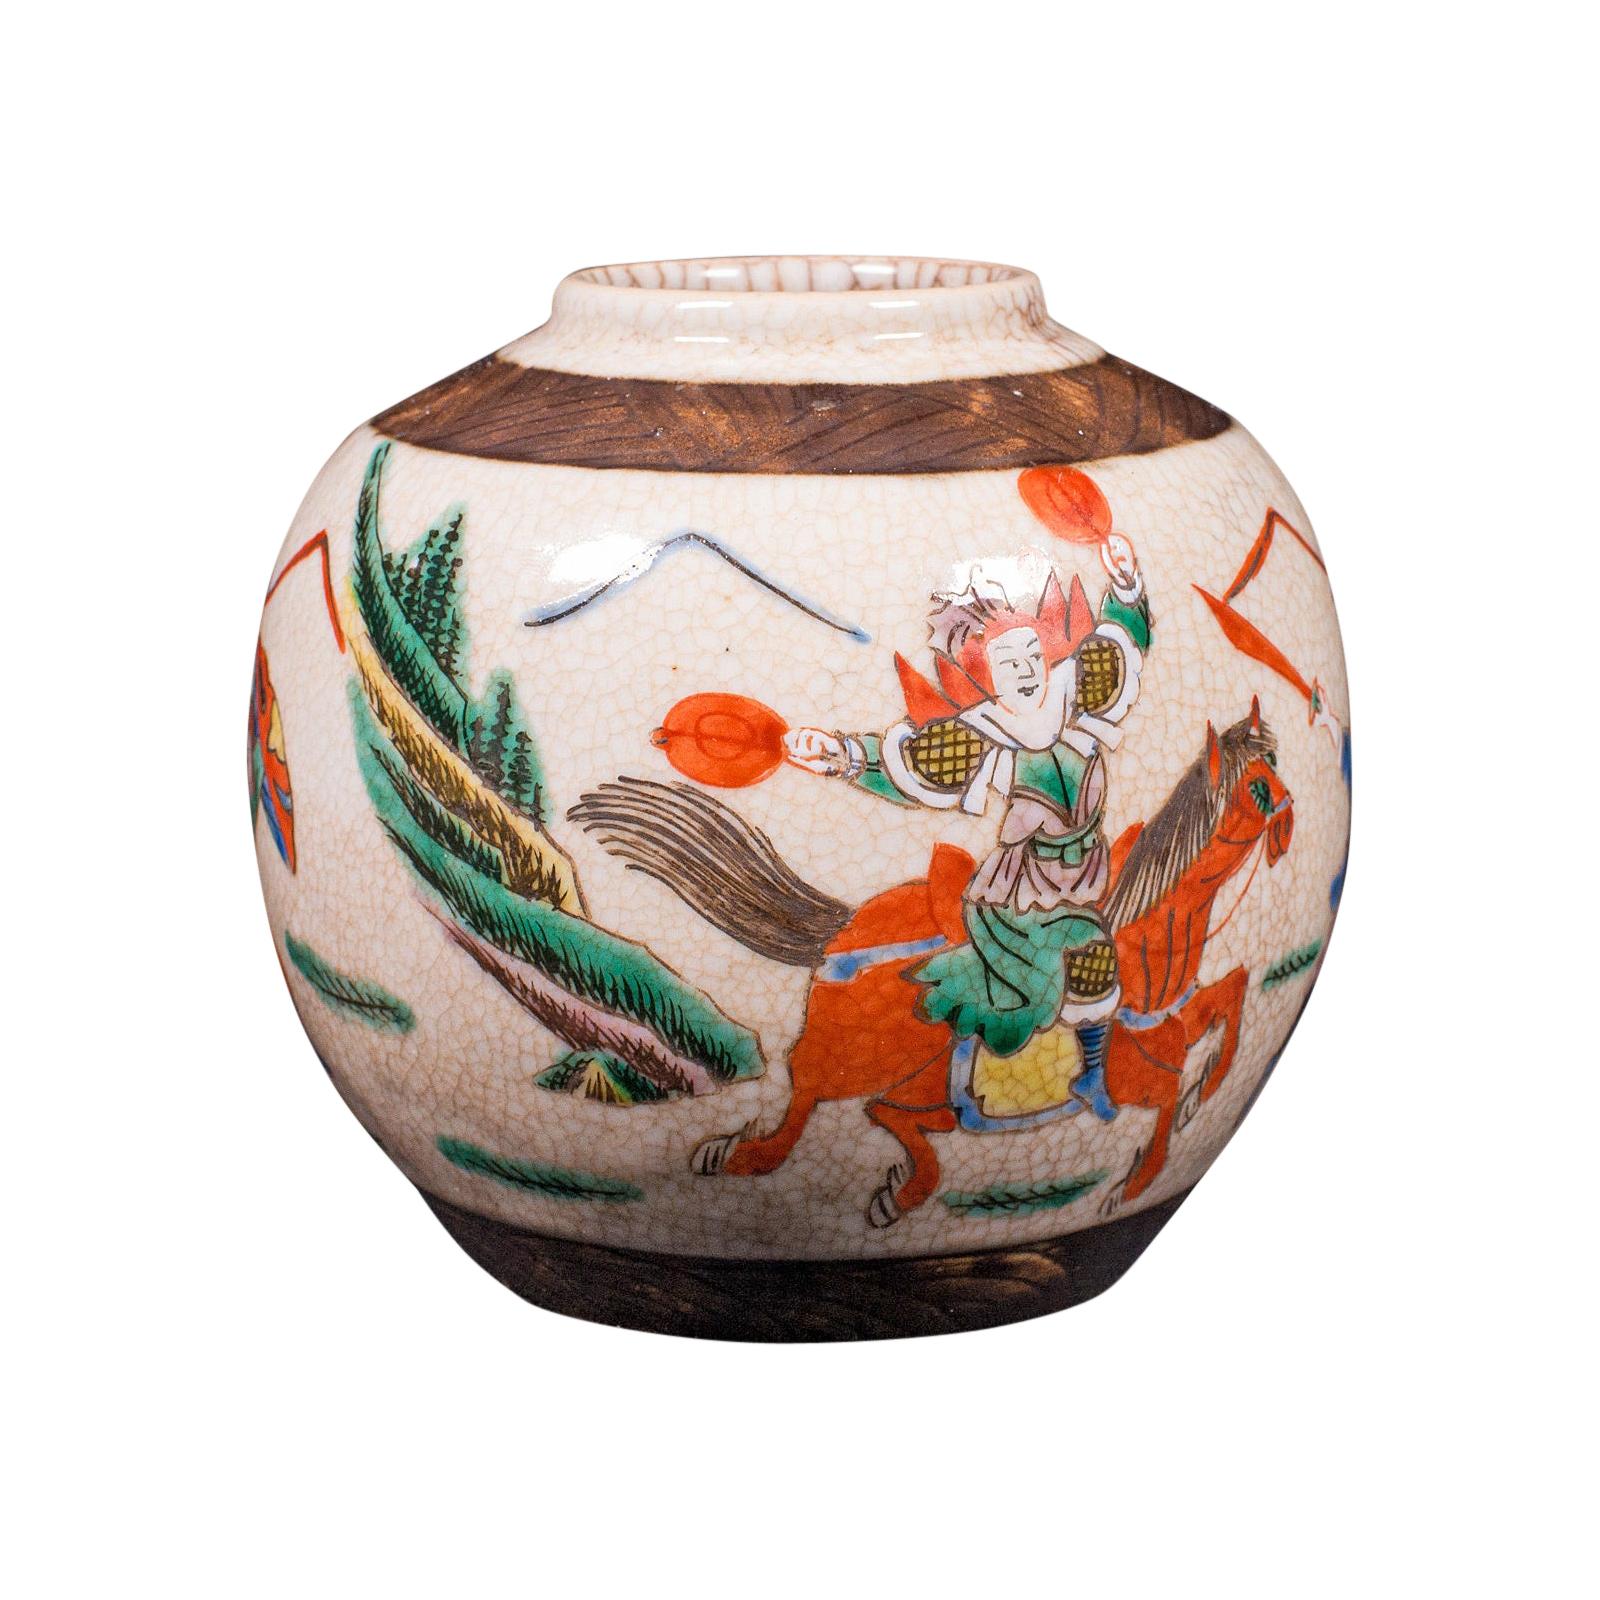 Petit vase à fleurs ancien japonais, céramique, urne en forme de Posy, période Edo, vers 1850